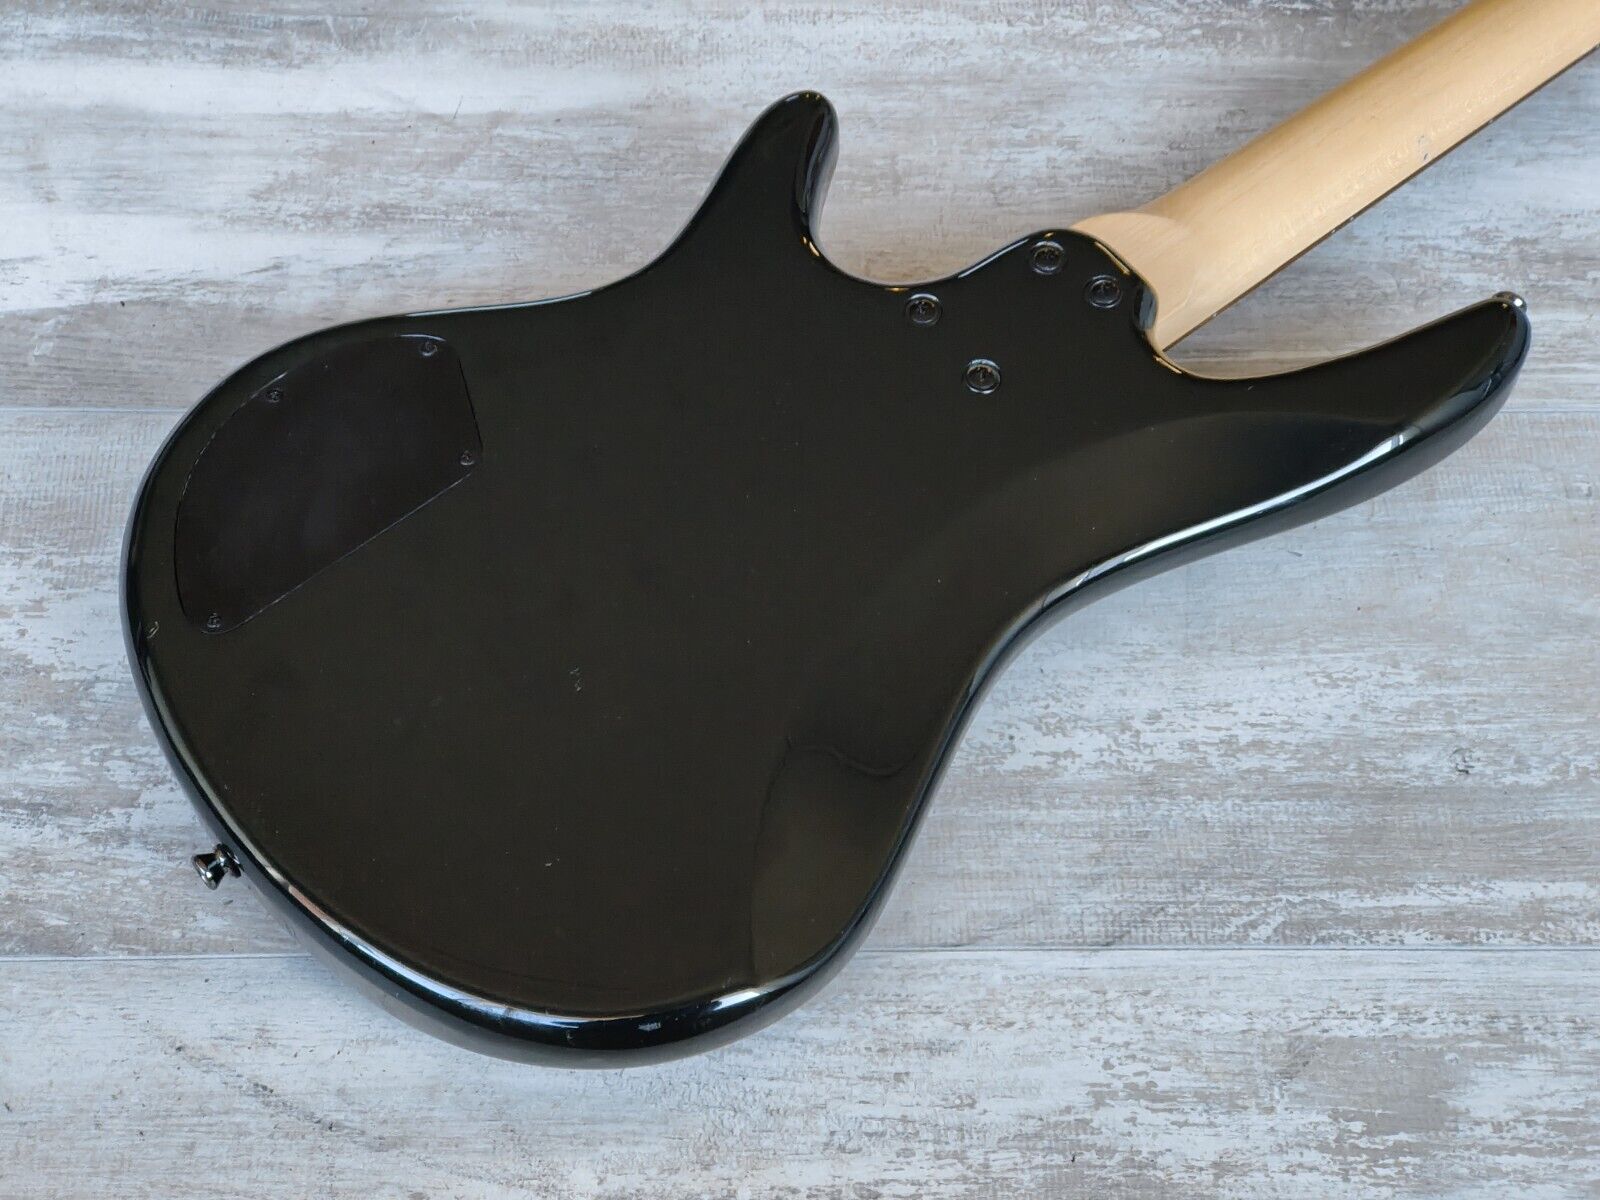 2009 Ibanez GSR180 SDGR Bass